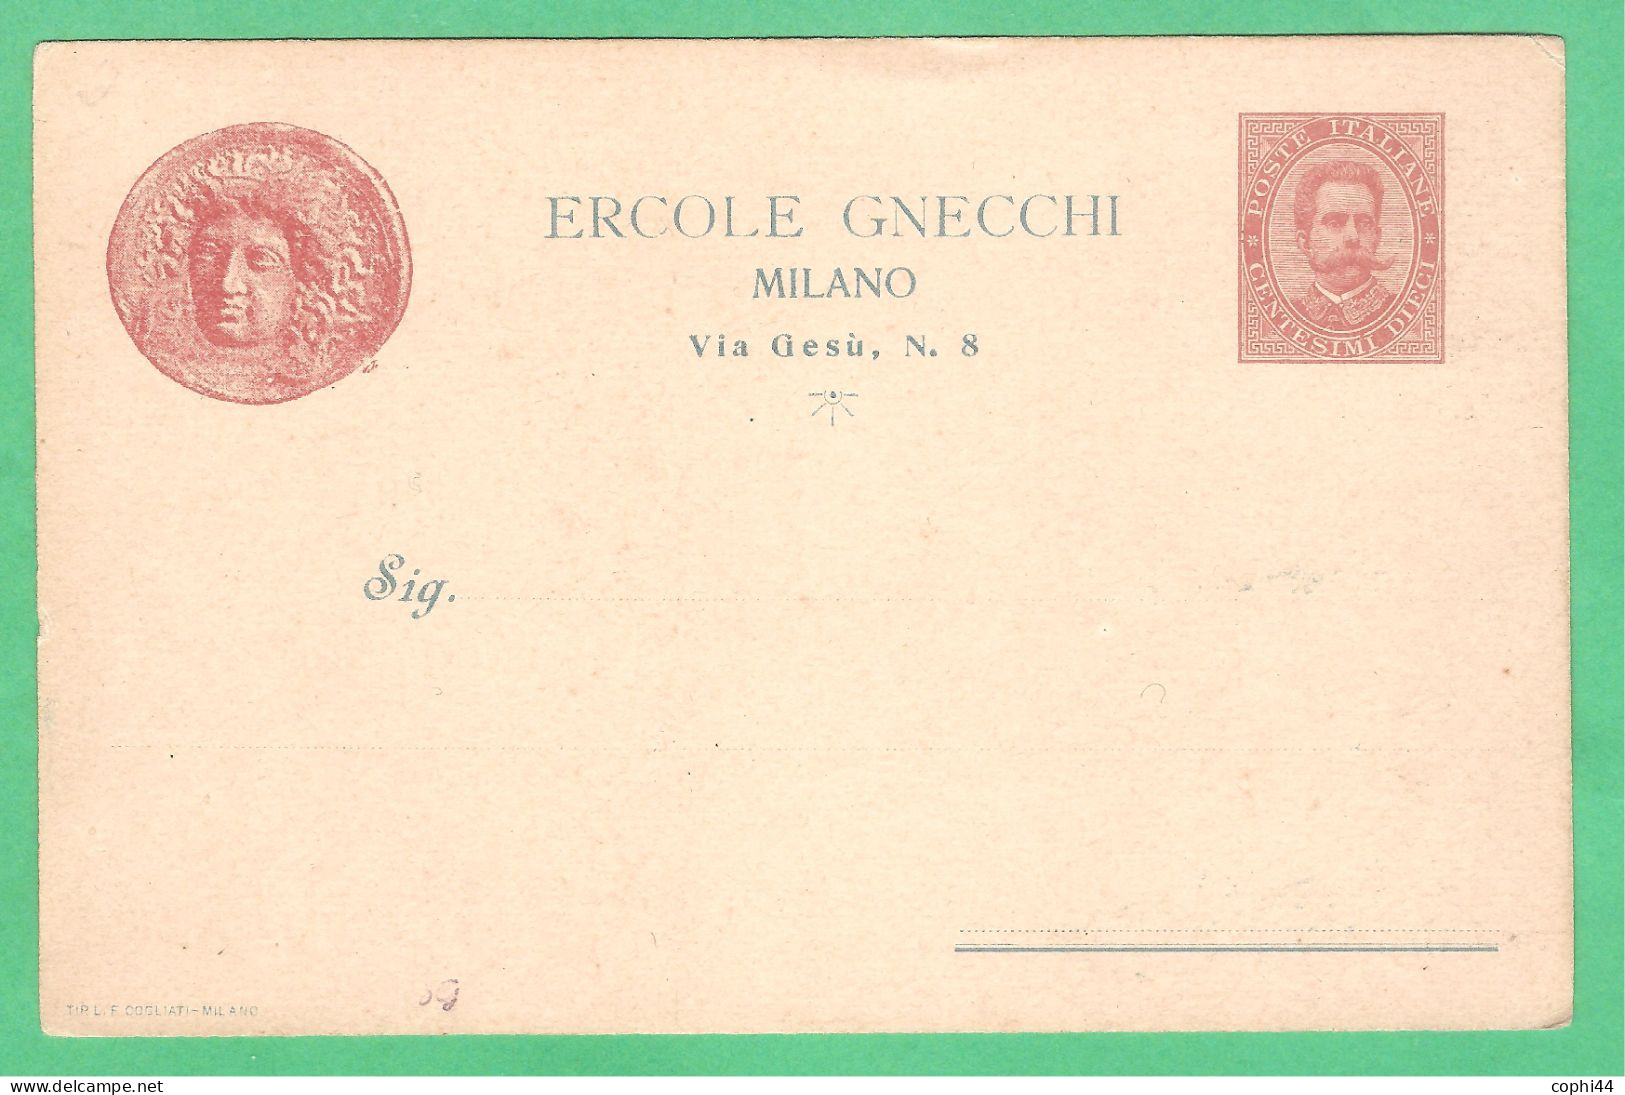 REGNO D'ITALIA 1894 CARTOLINA POSTALE COMMISSIONE PRIVATA ERCOLE GNECCHI MONETA D 10 C (FILAGRANO CC3-5A) NUOVA - Interi Postali